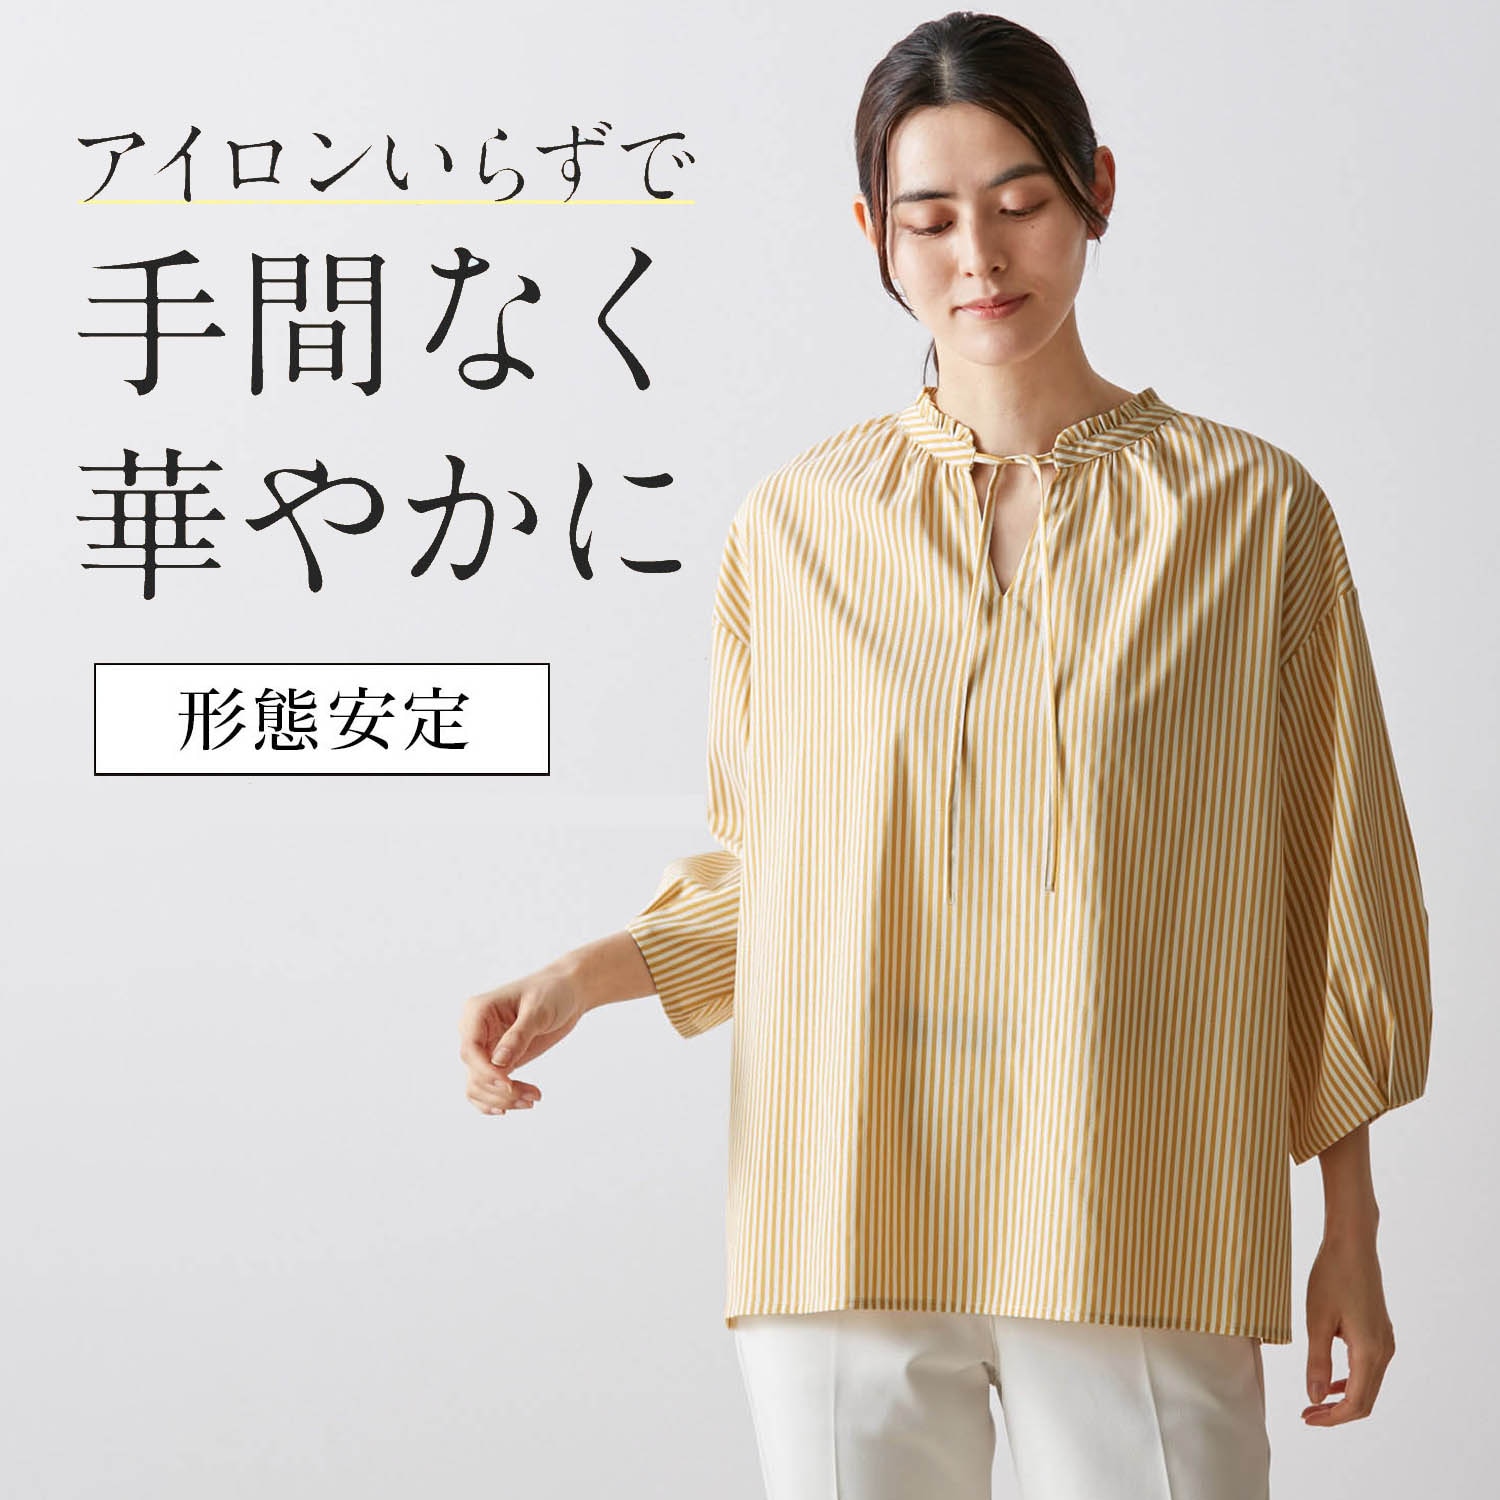 ベルメゾン Style Note (S)レディース シャツやTシャツとも合う